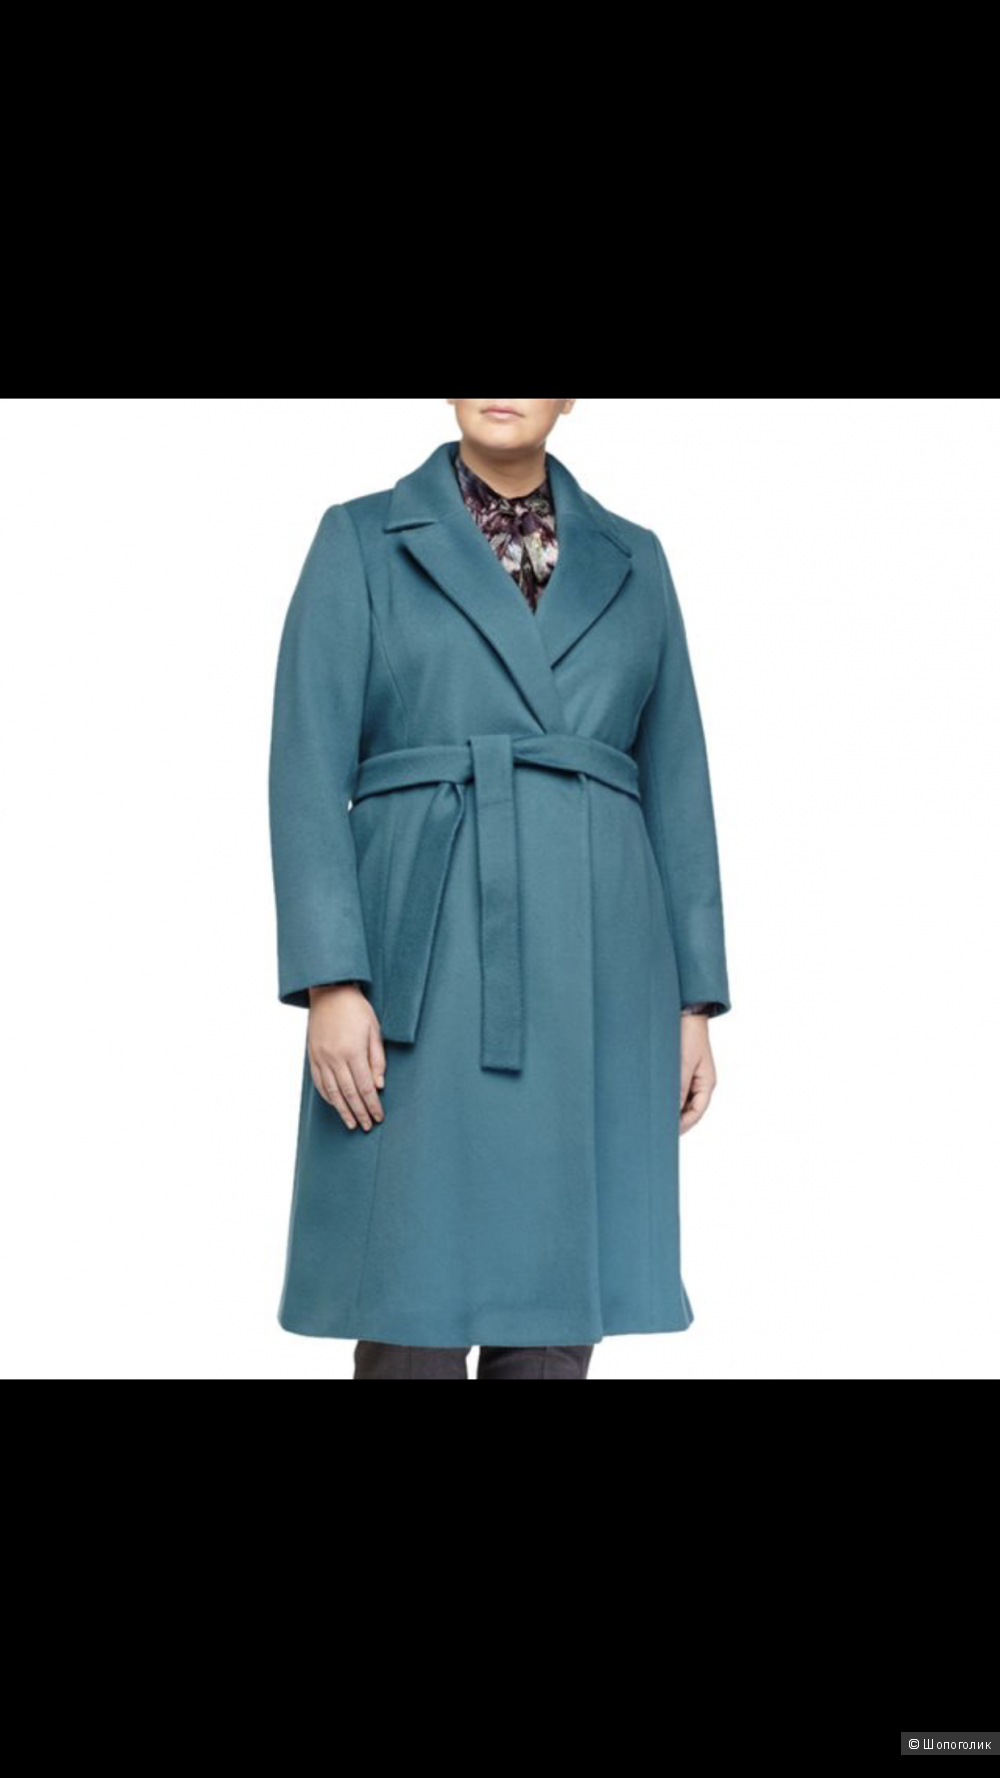 Пальто Marina Rinaldi 50-52рос размер